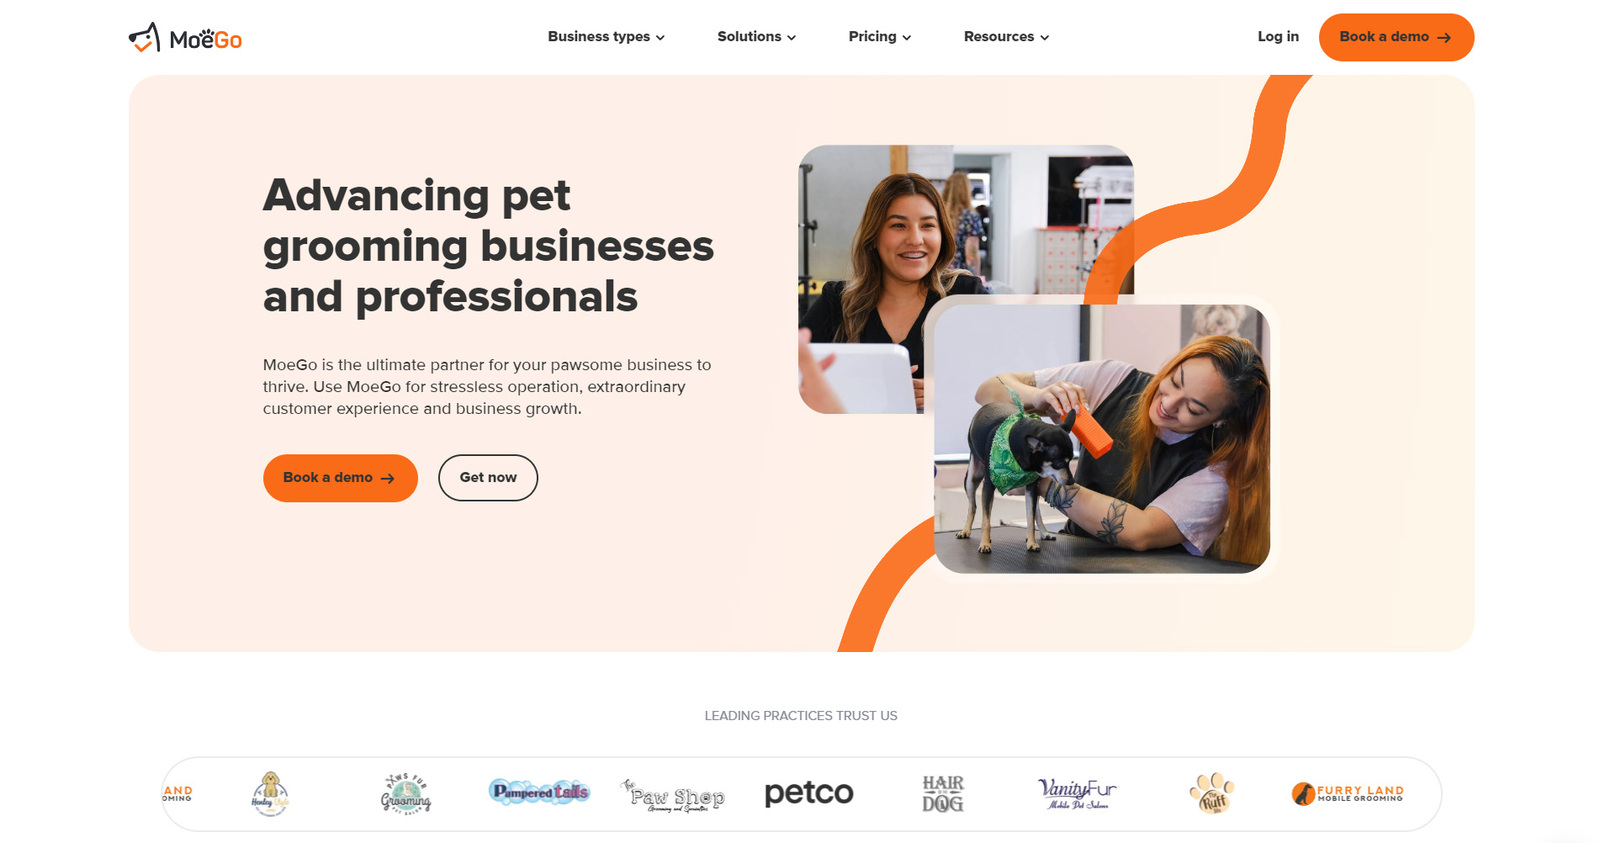 Изображение MoeGo, одного из лучших вариантов программного обеспечения для ухода за домашними животными для предприятий по уходу за домашними животными.